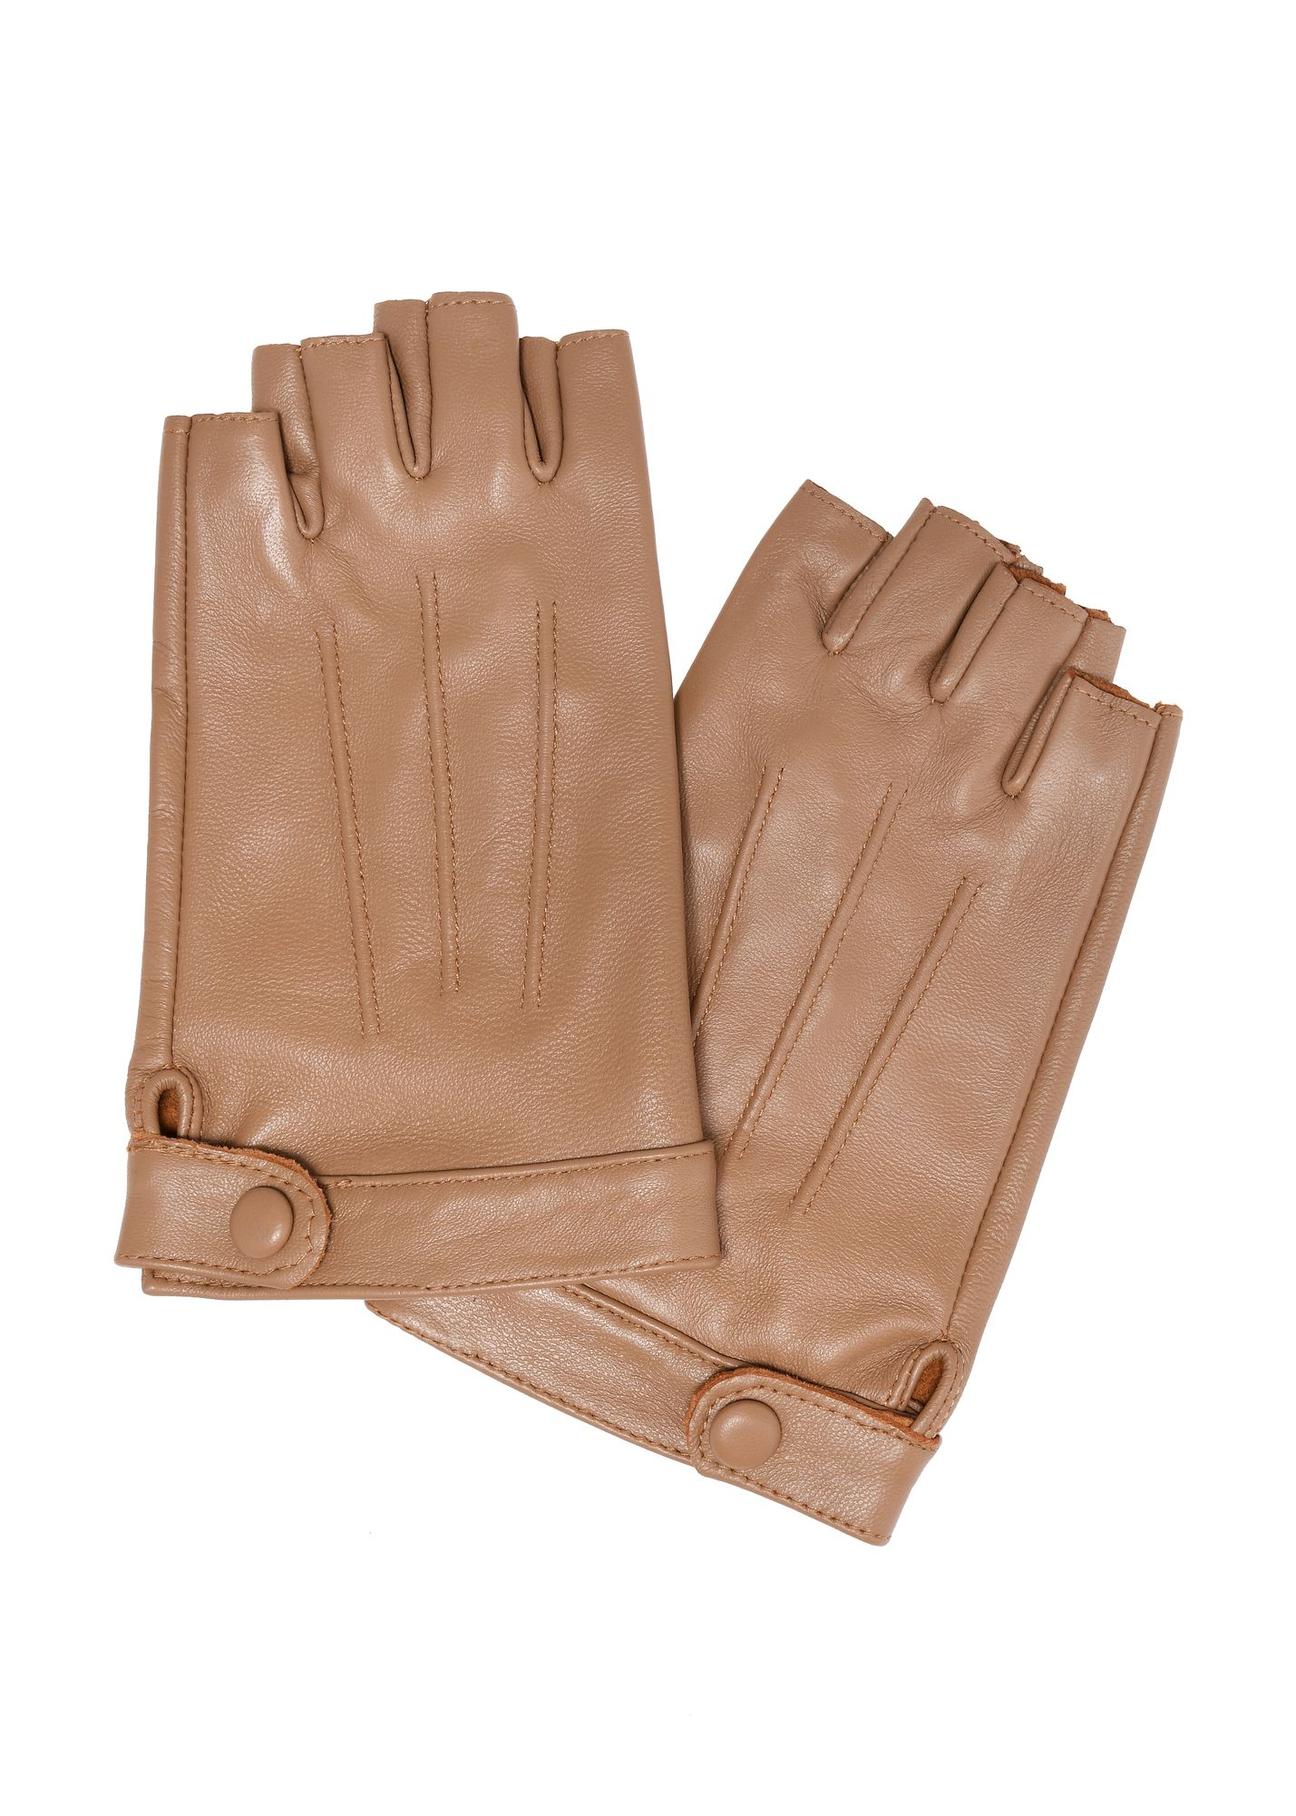 Skórzane rękawiczki damskie samochodowe REKDS-0085-81(W24)